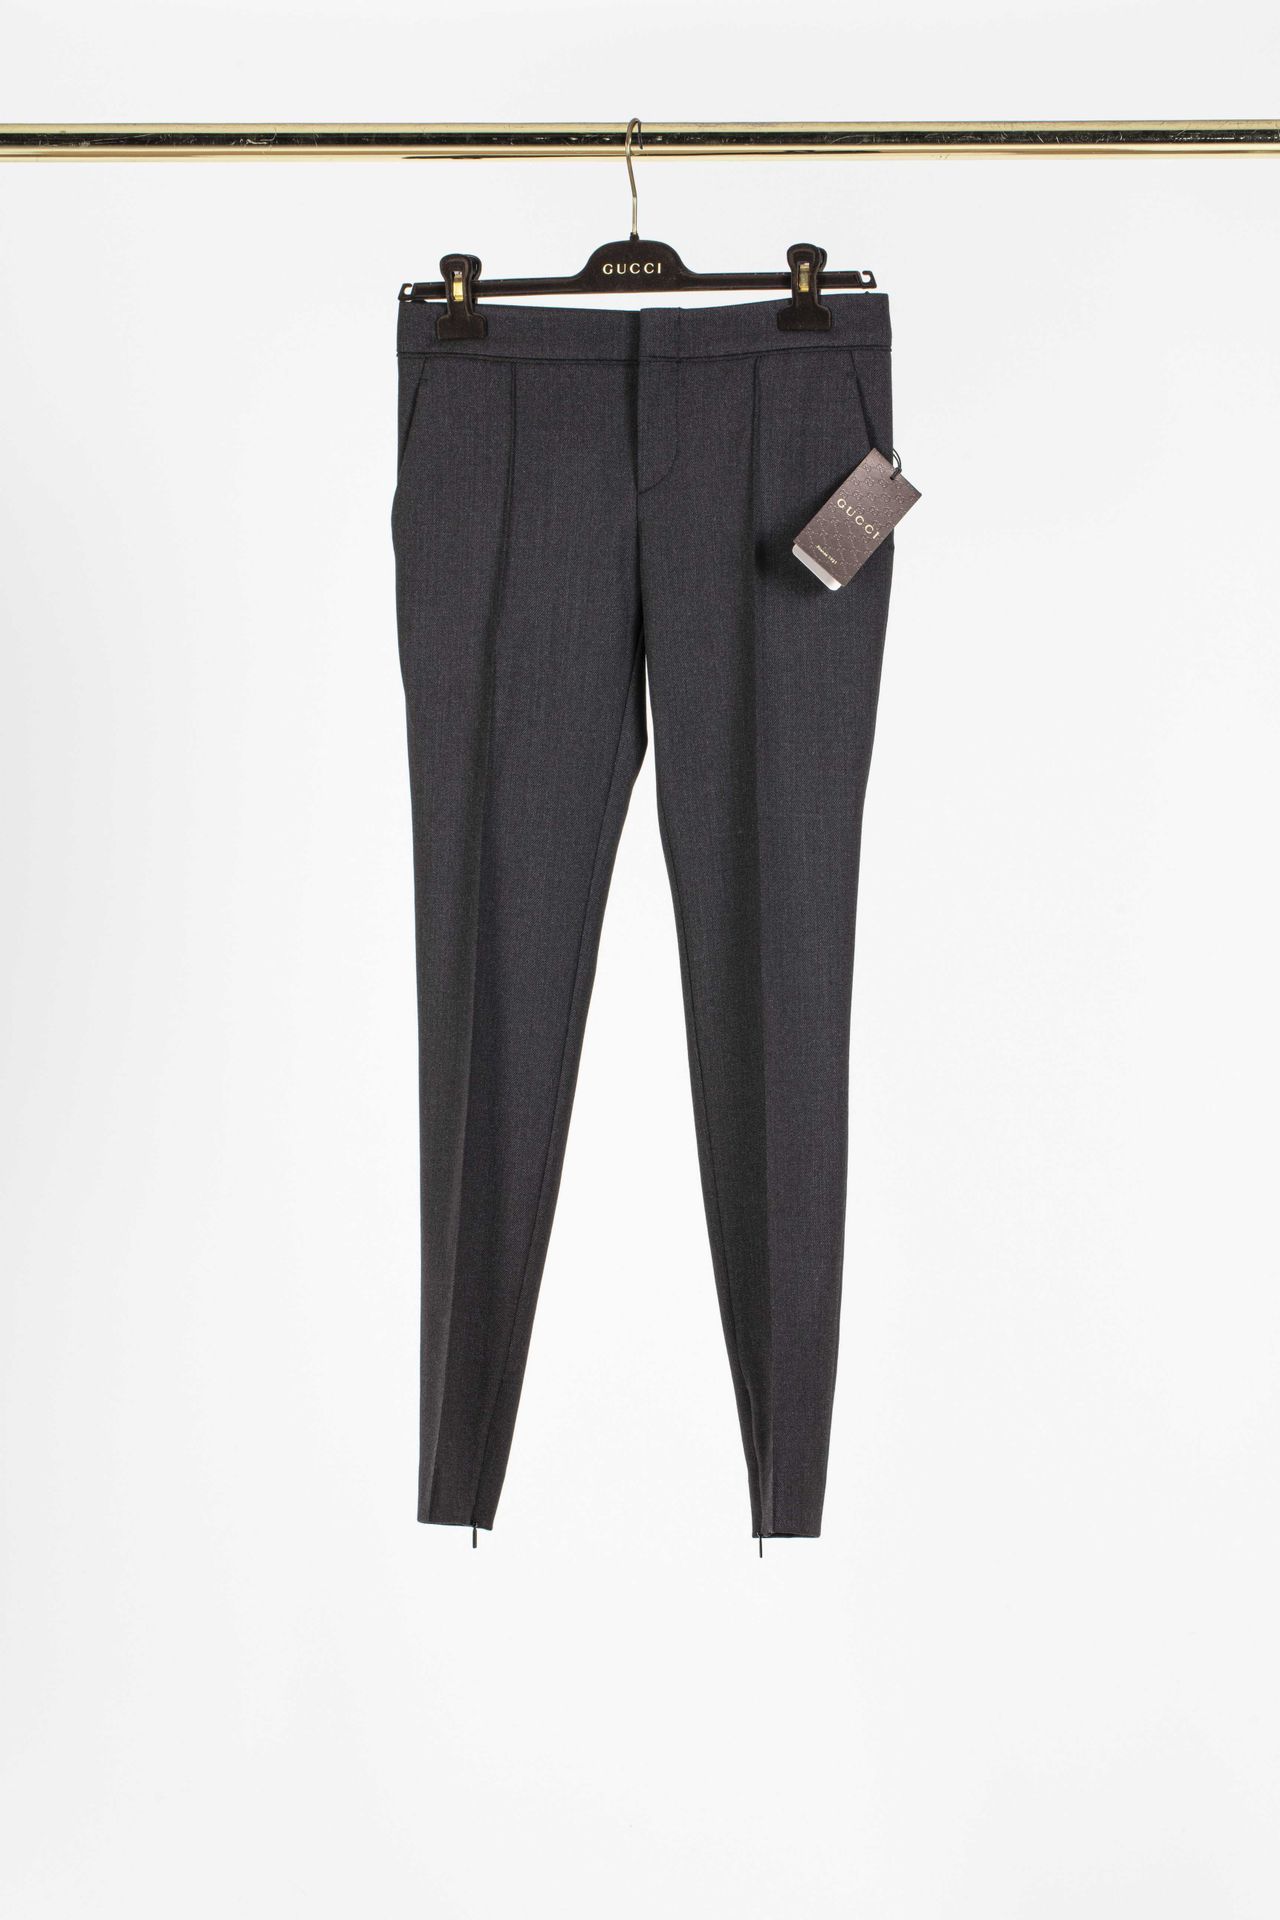 Null GUCCI: traje de pantalón de poliéster gris compuesto por un pantalón recto &hellip;